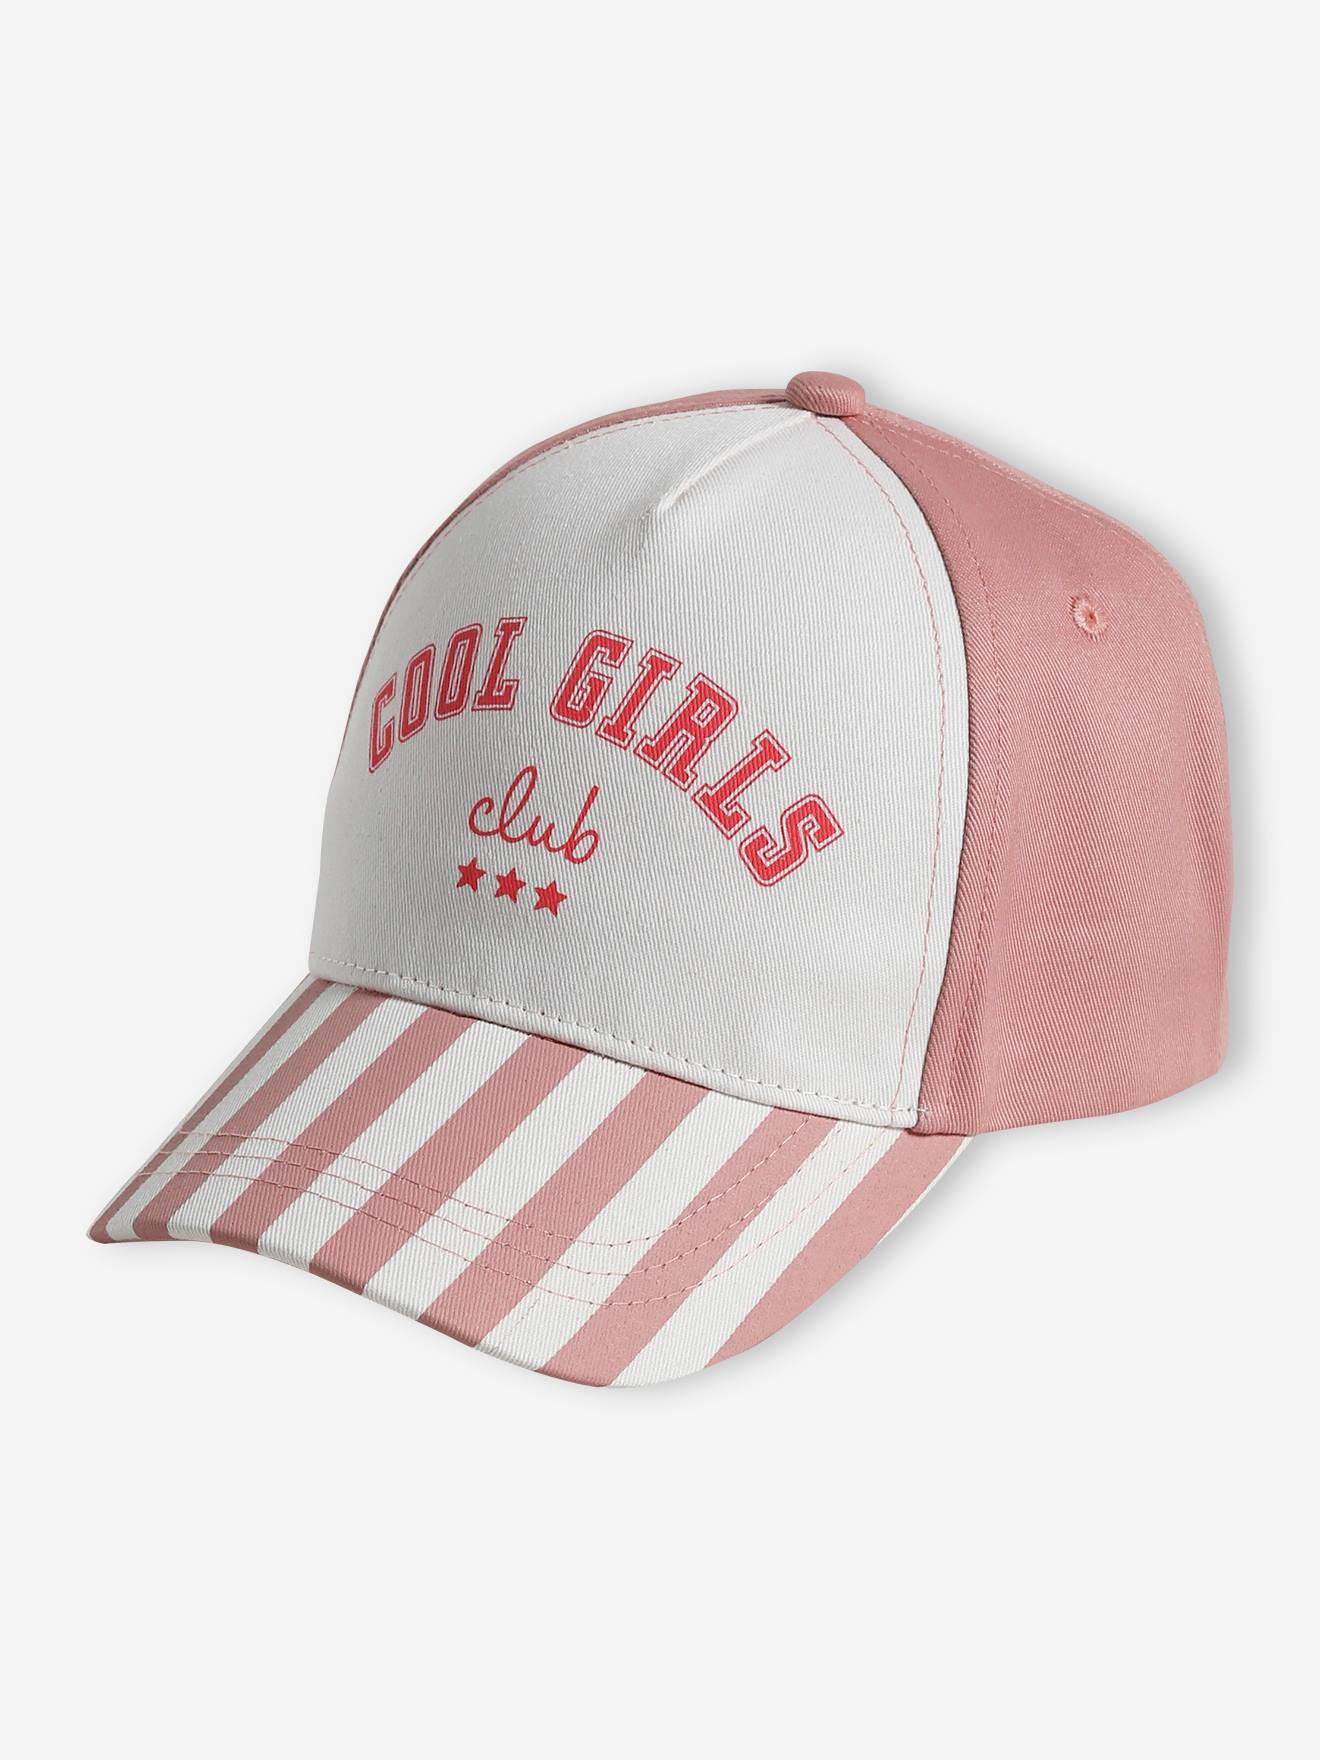 Mädchen Cap Cool Girls Club von Vertbaudet